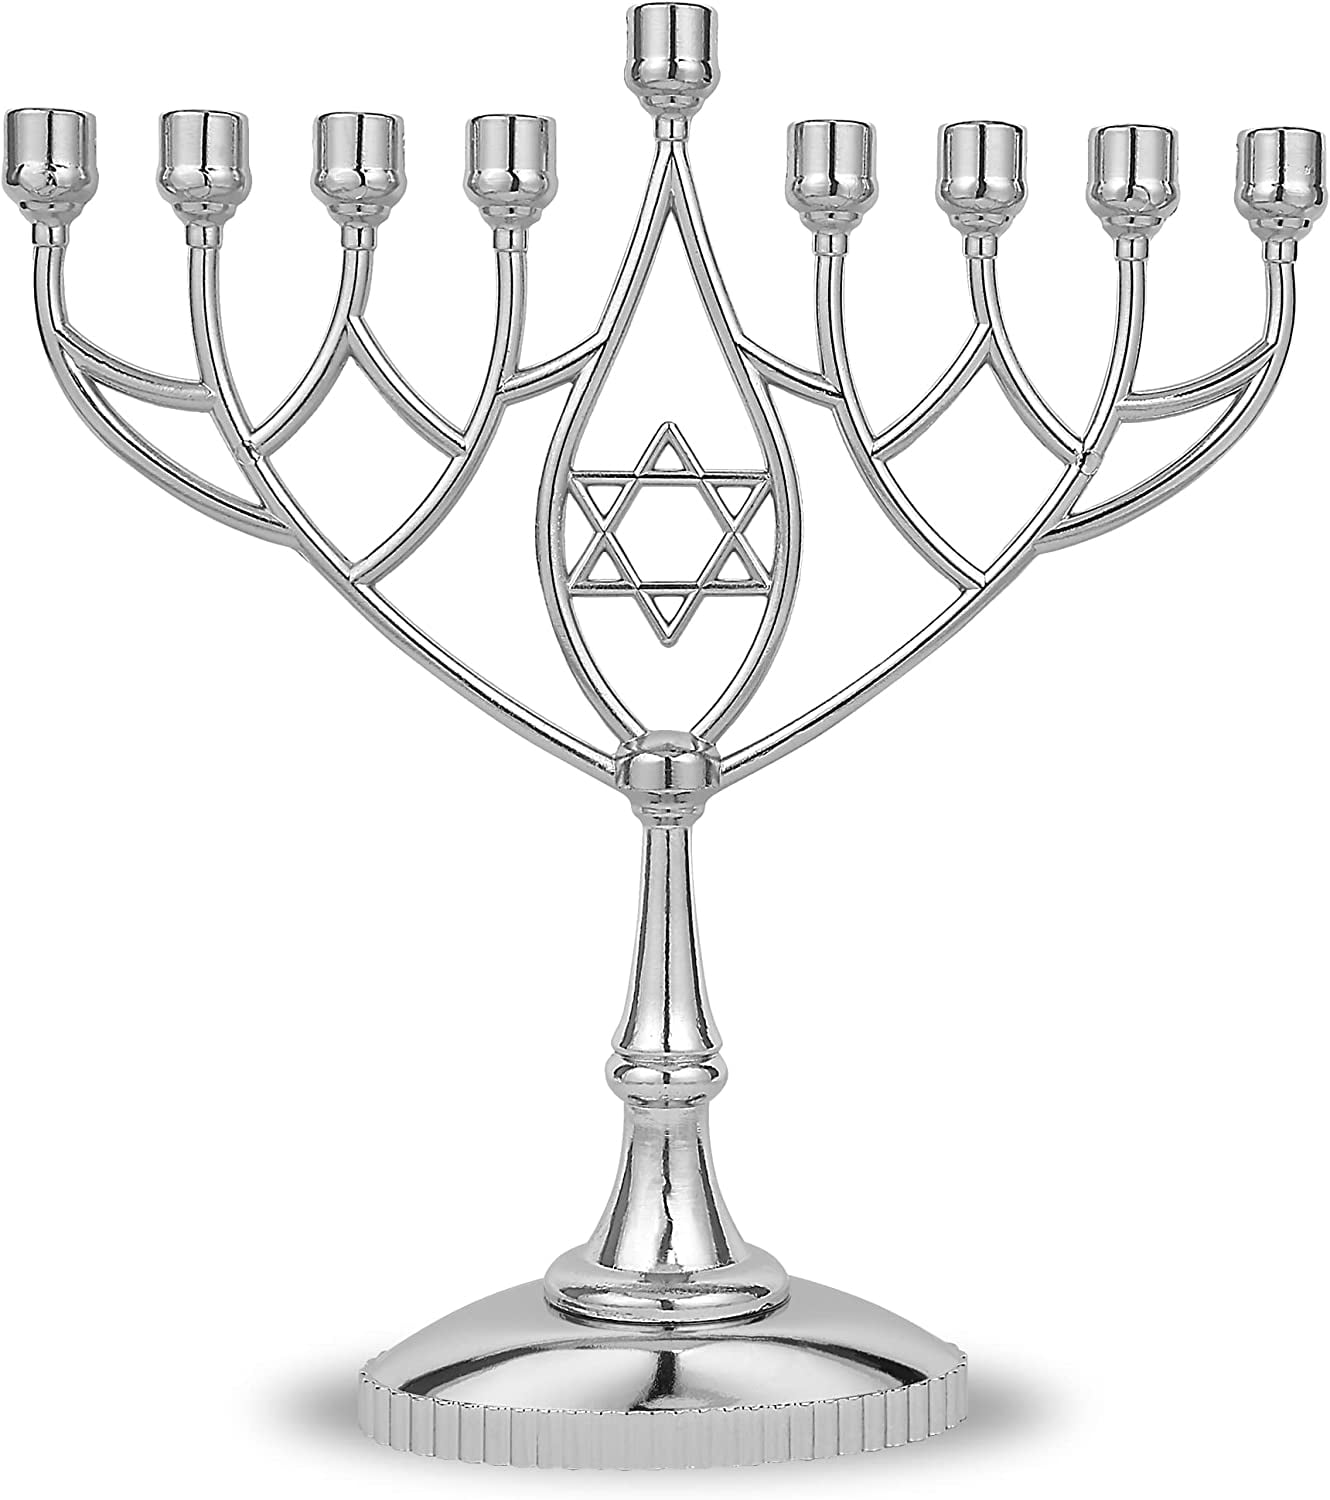 Geometric Hanukkah Menorah - Classic Silver Plated